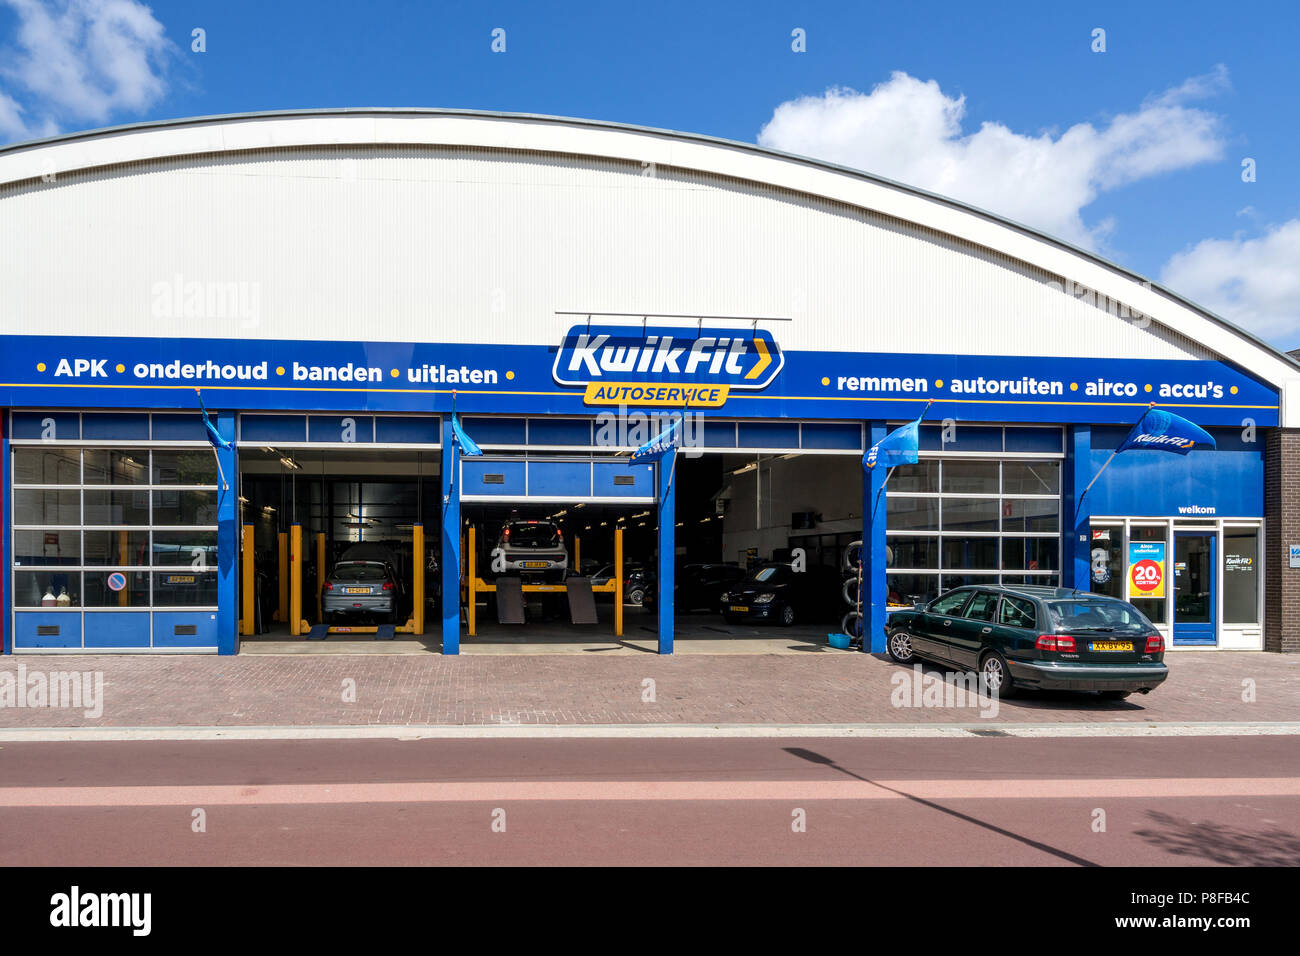 KwikFit Car Service in Delft, Niederlande. KwikFit ist einer der größten Auto Wartung und Reparatur der Kette in Europa, mit über 1800 Service Points. Stockfoto